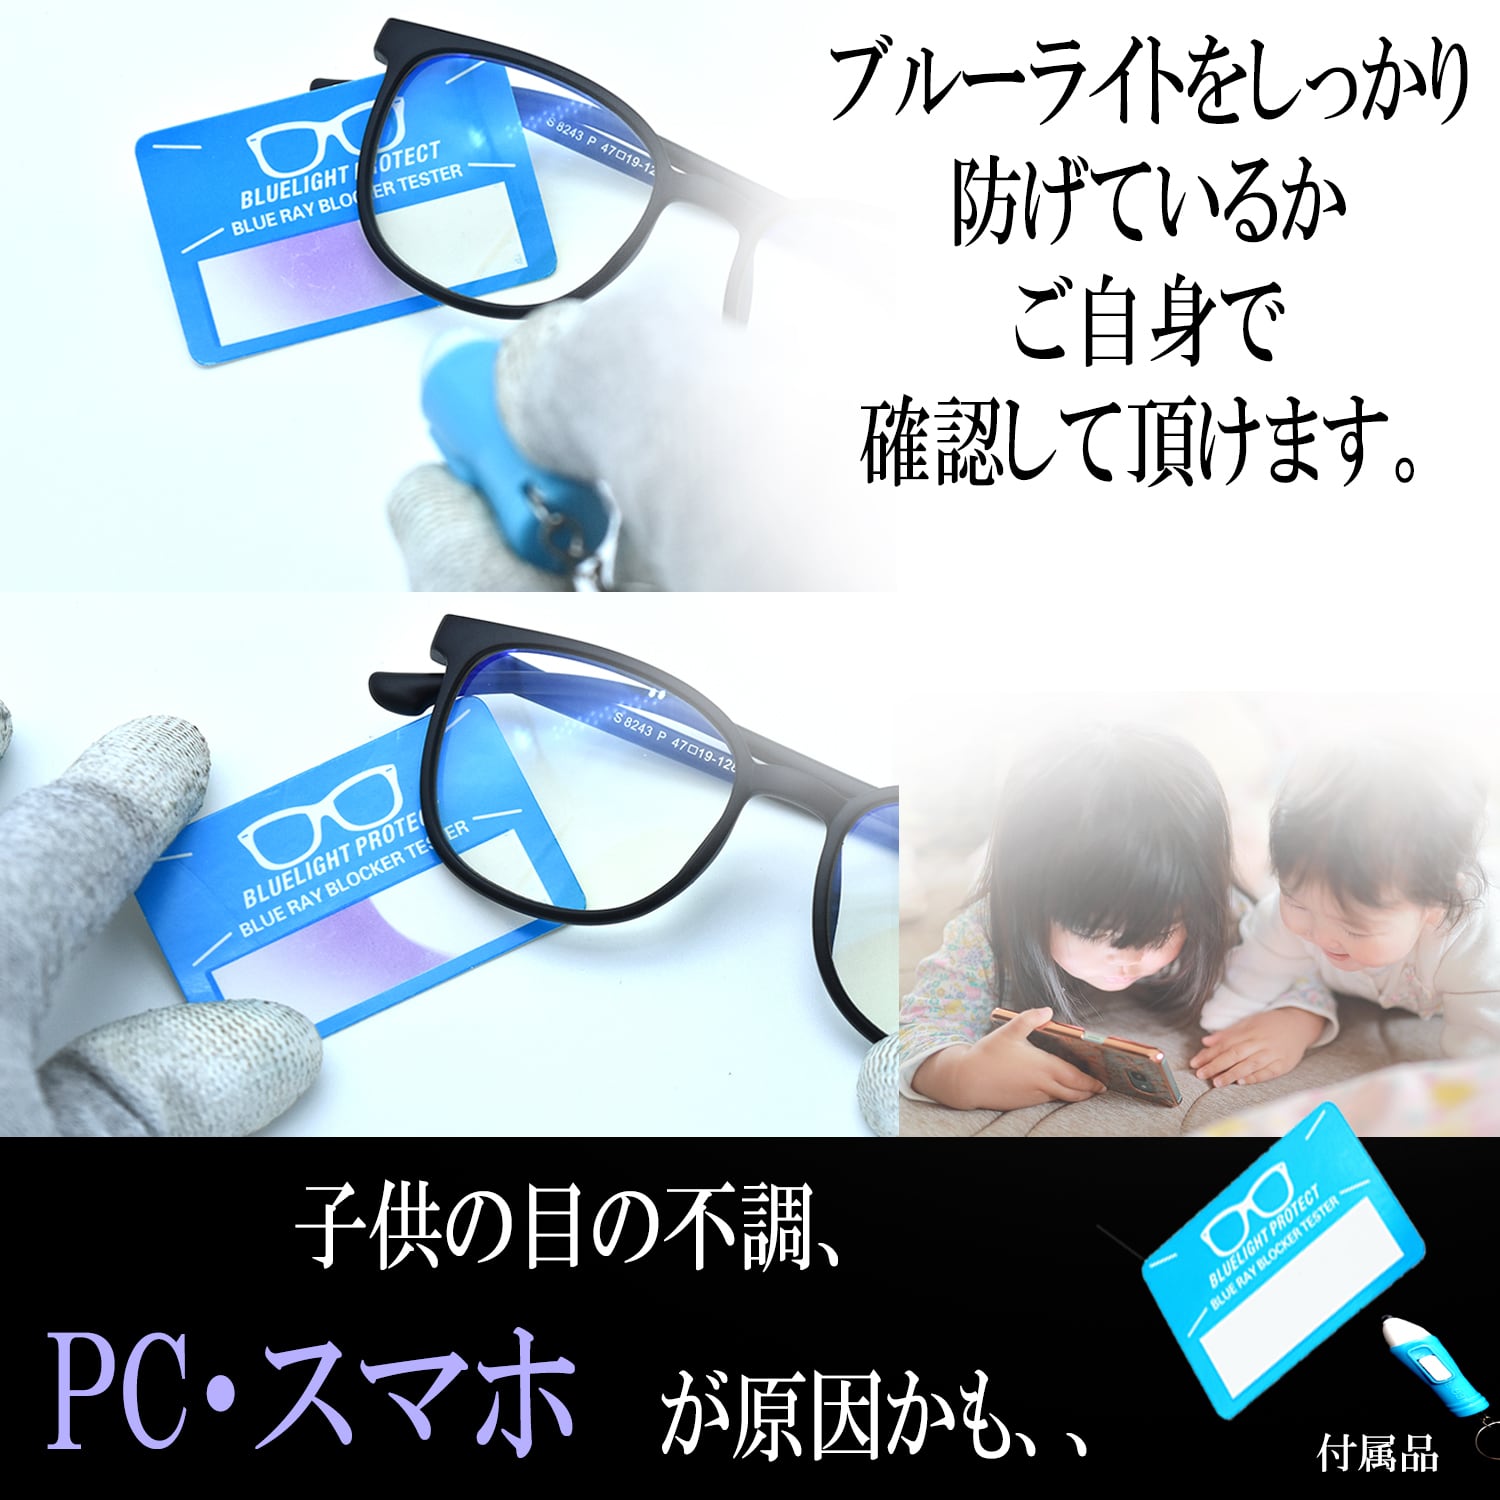 LACCL (ラクル) ブルーライトカット メガネ キッズ 子供用 こども PC パソコン 超軽量 14グラム 伊達眼鏡 ブルーレンズ 度なし UV  90％以上 LACCL